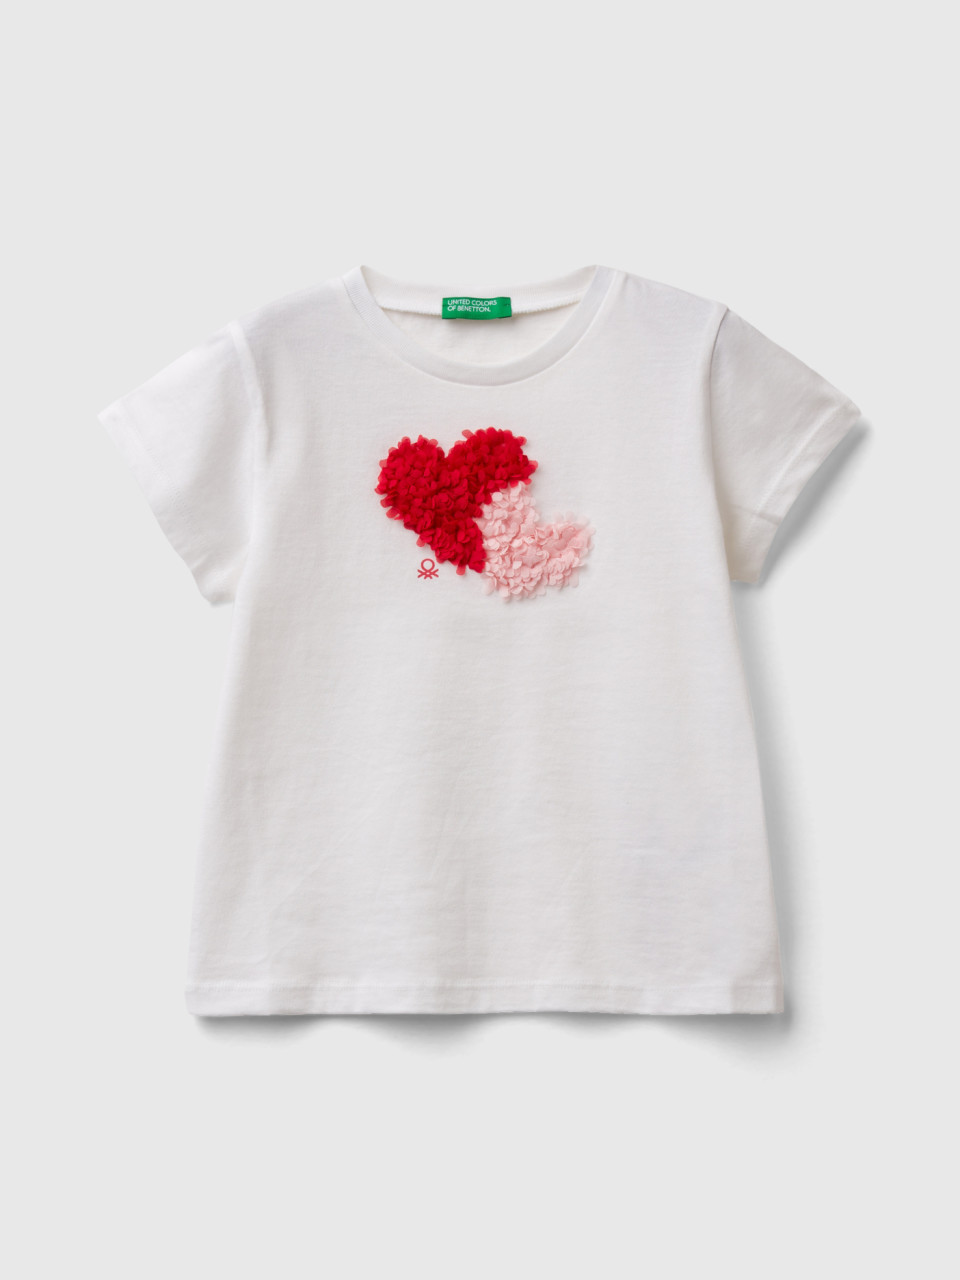 Benetton, T-shirt Mit Applikationen Mit Blütenblatteffekt, Weiss, female